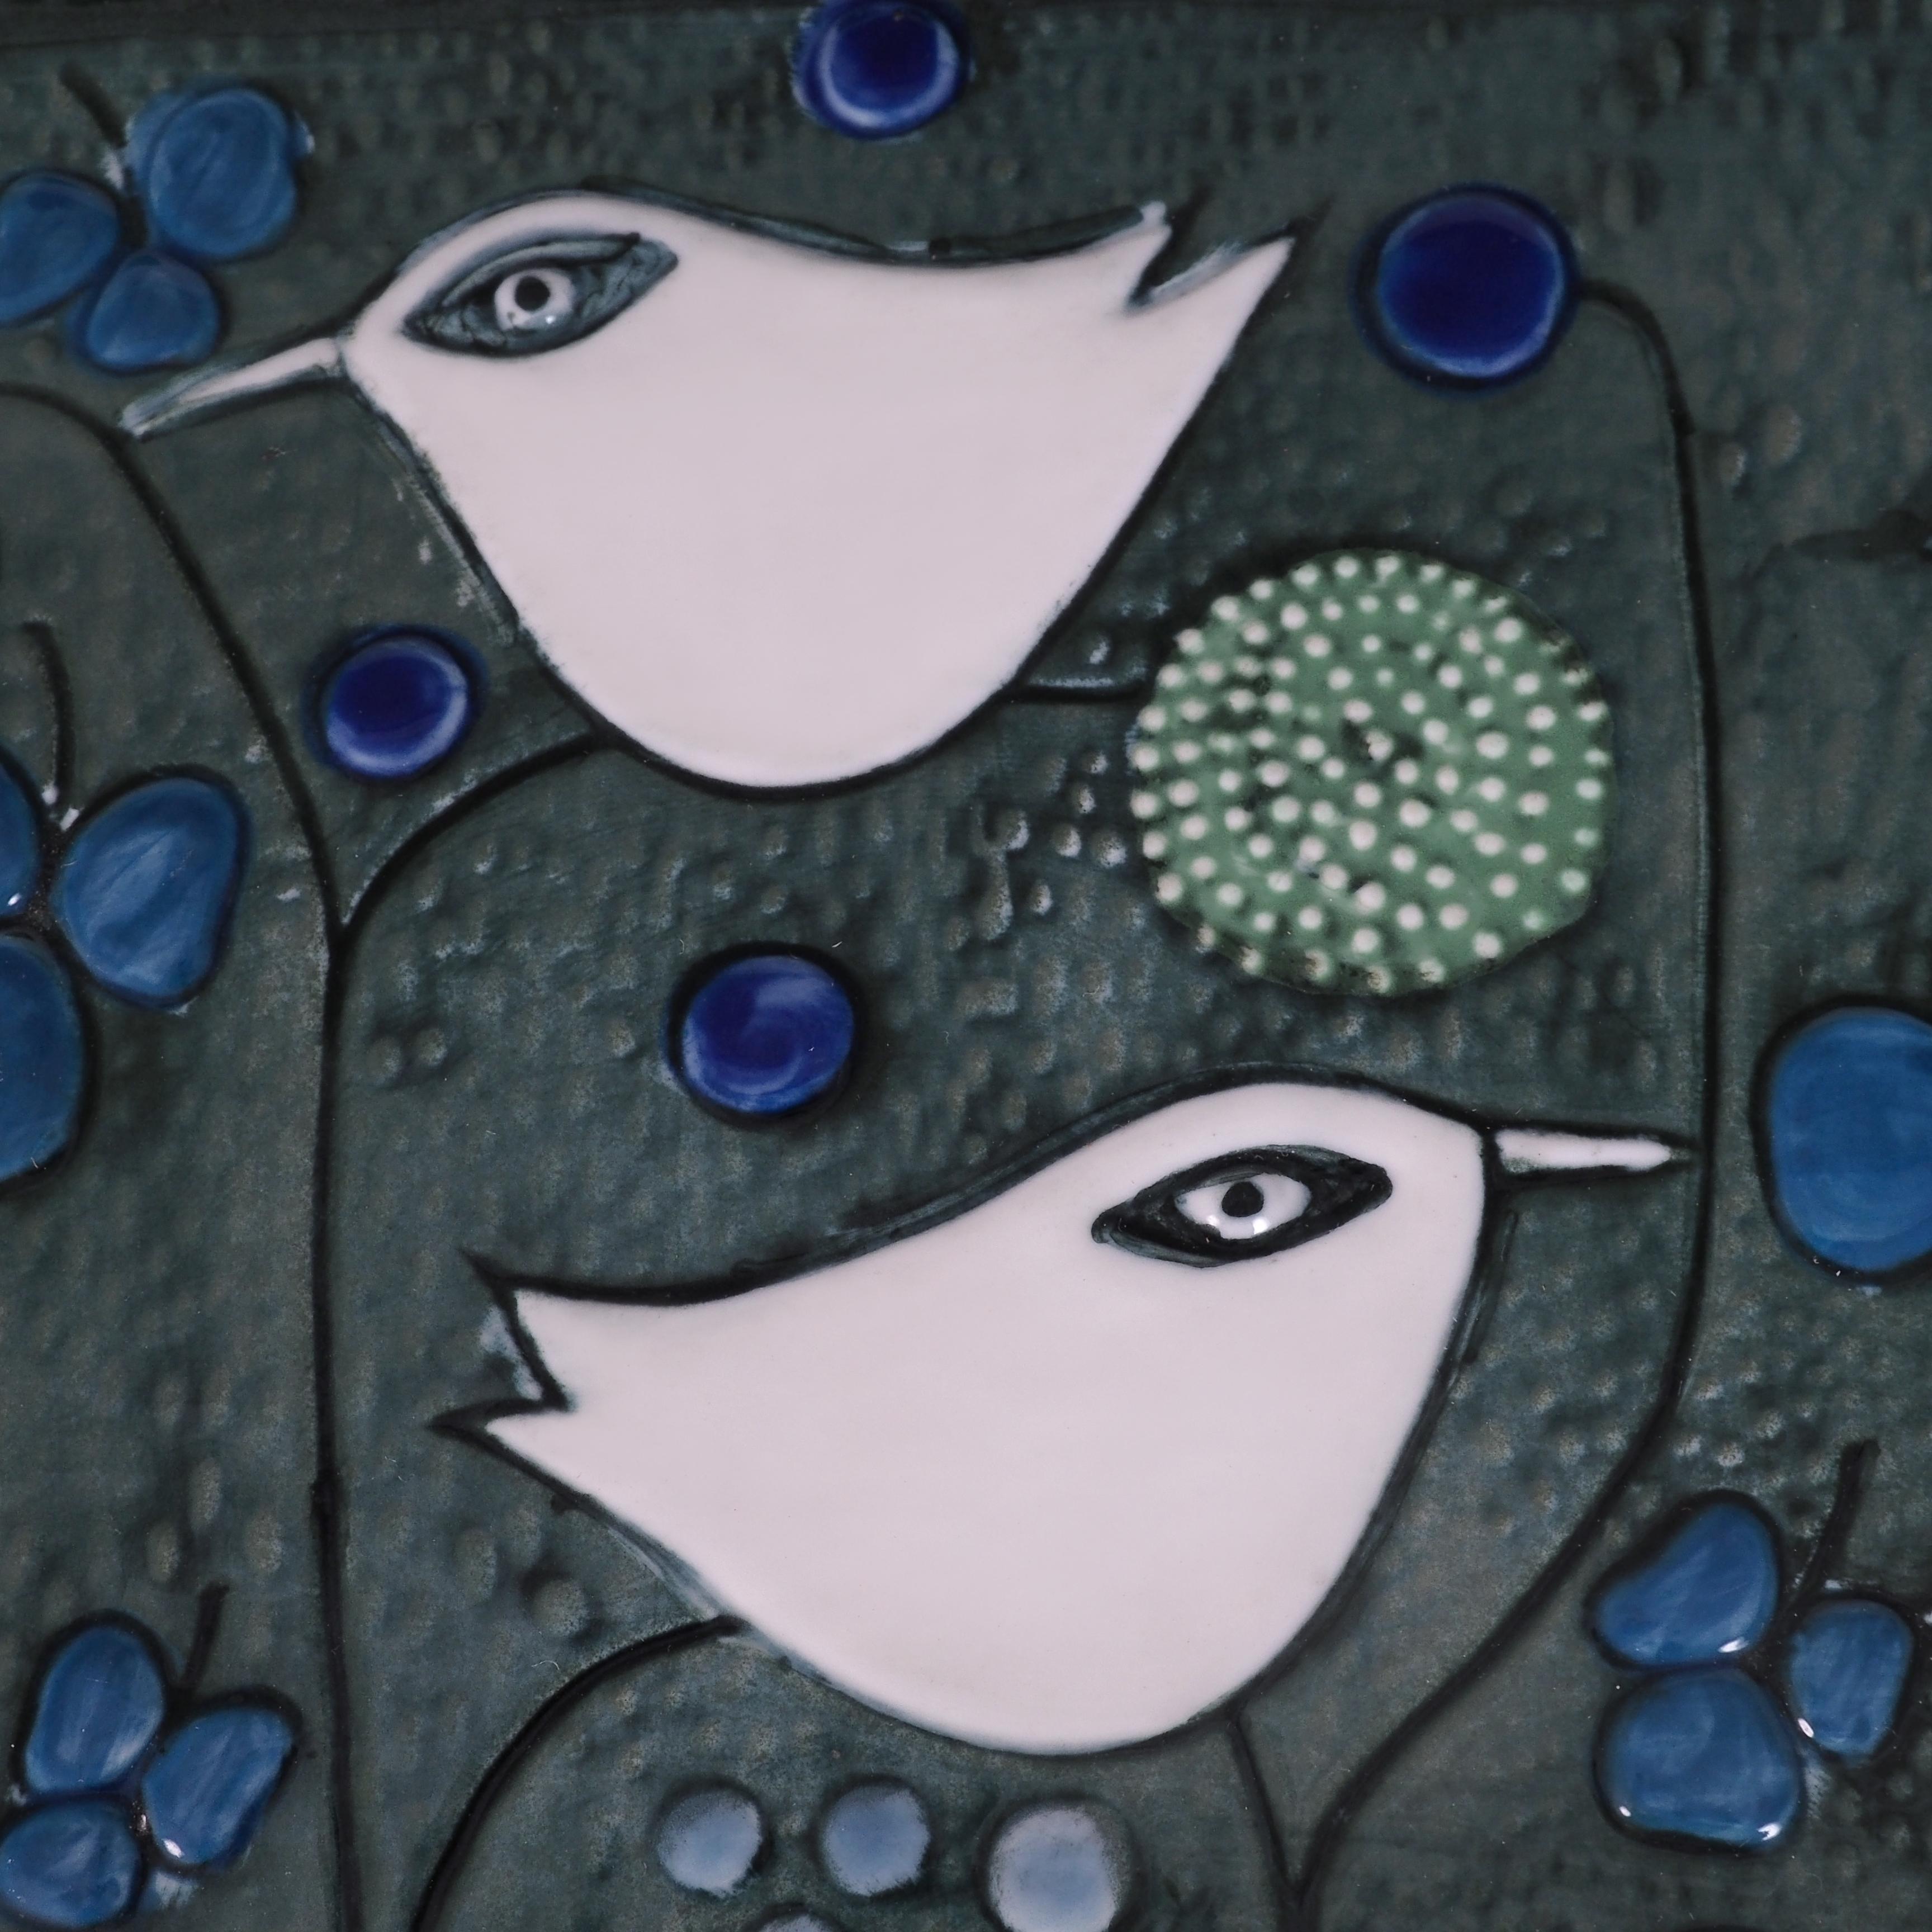 Dekoratives Tablett der schwedischen Künstlerin Sylvia Leuchovius. (1915-2003). Leuchovius war fast 30 Jahre lang einer der produktivsten Künstler Rörstrands. Dieses Tablett ist ein typisches Beispiel für ihr Werk, das oft von der Natur mit Blumen